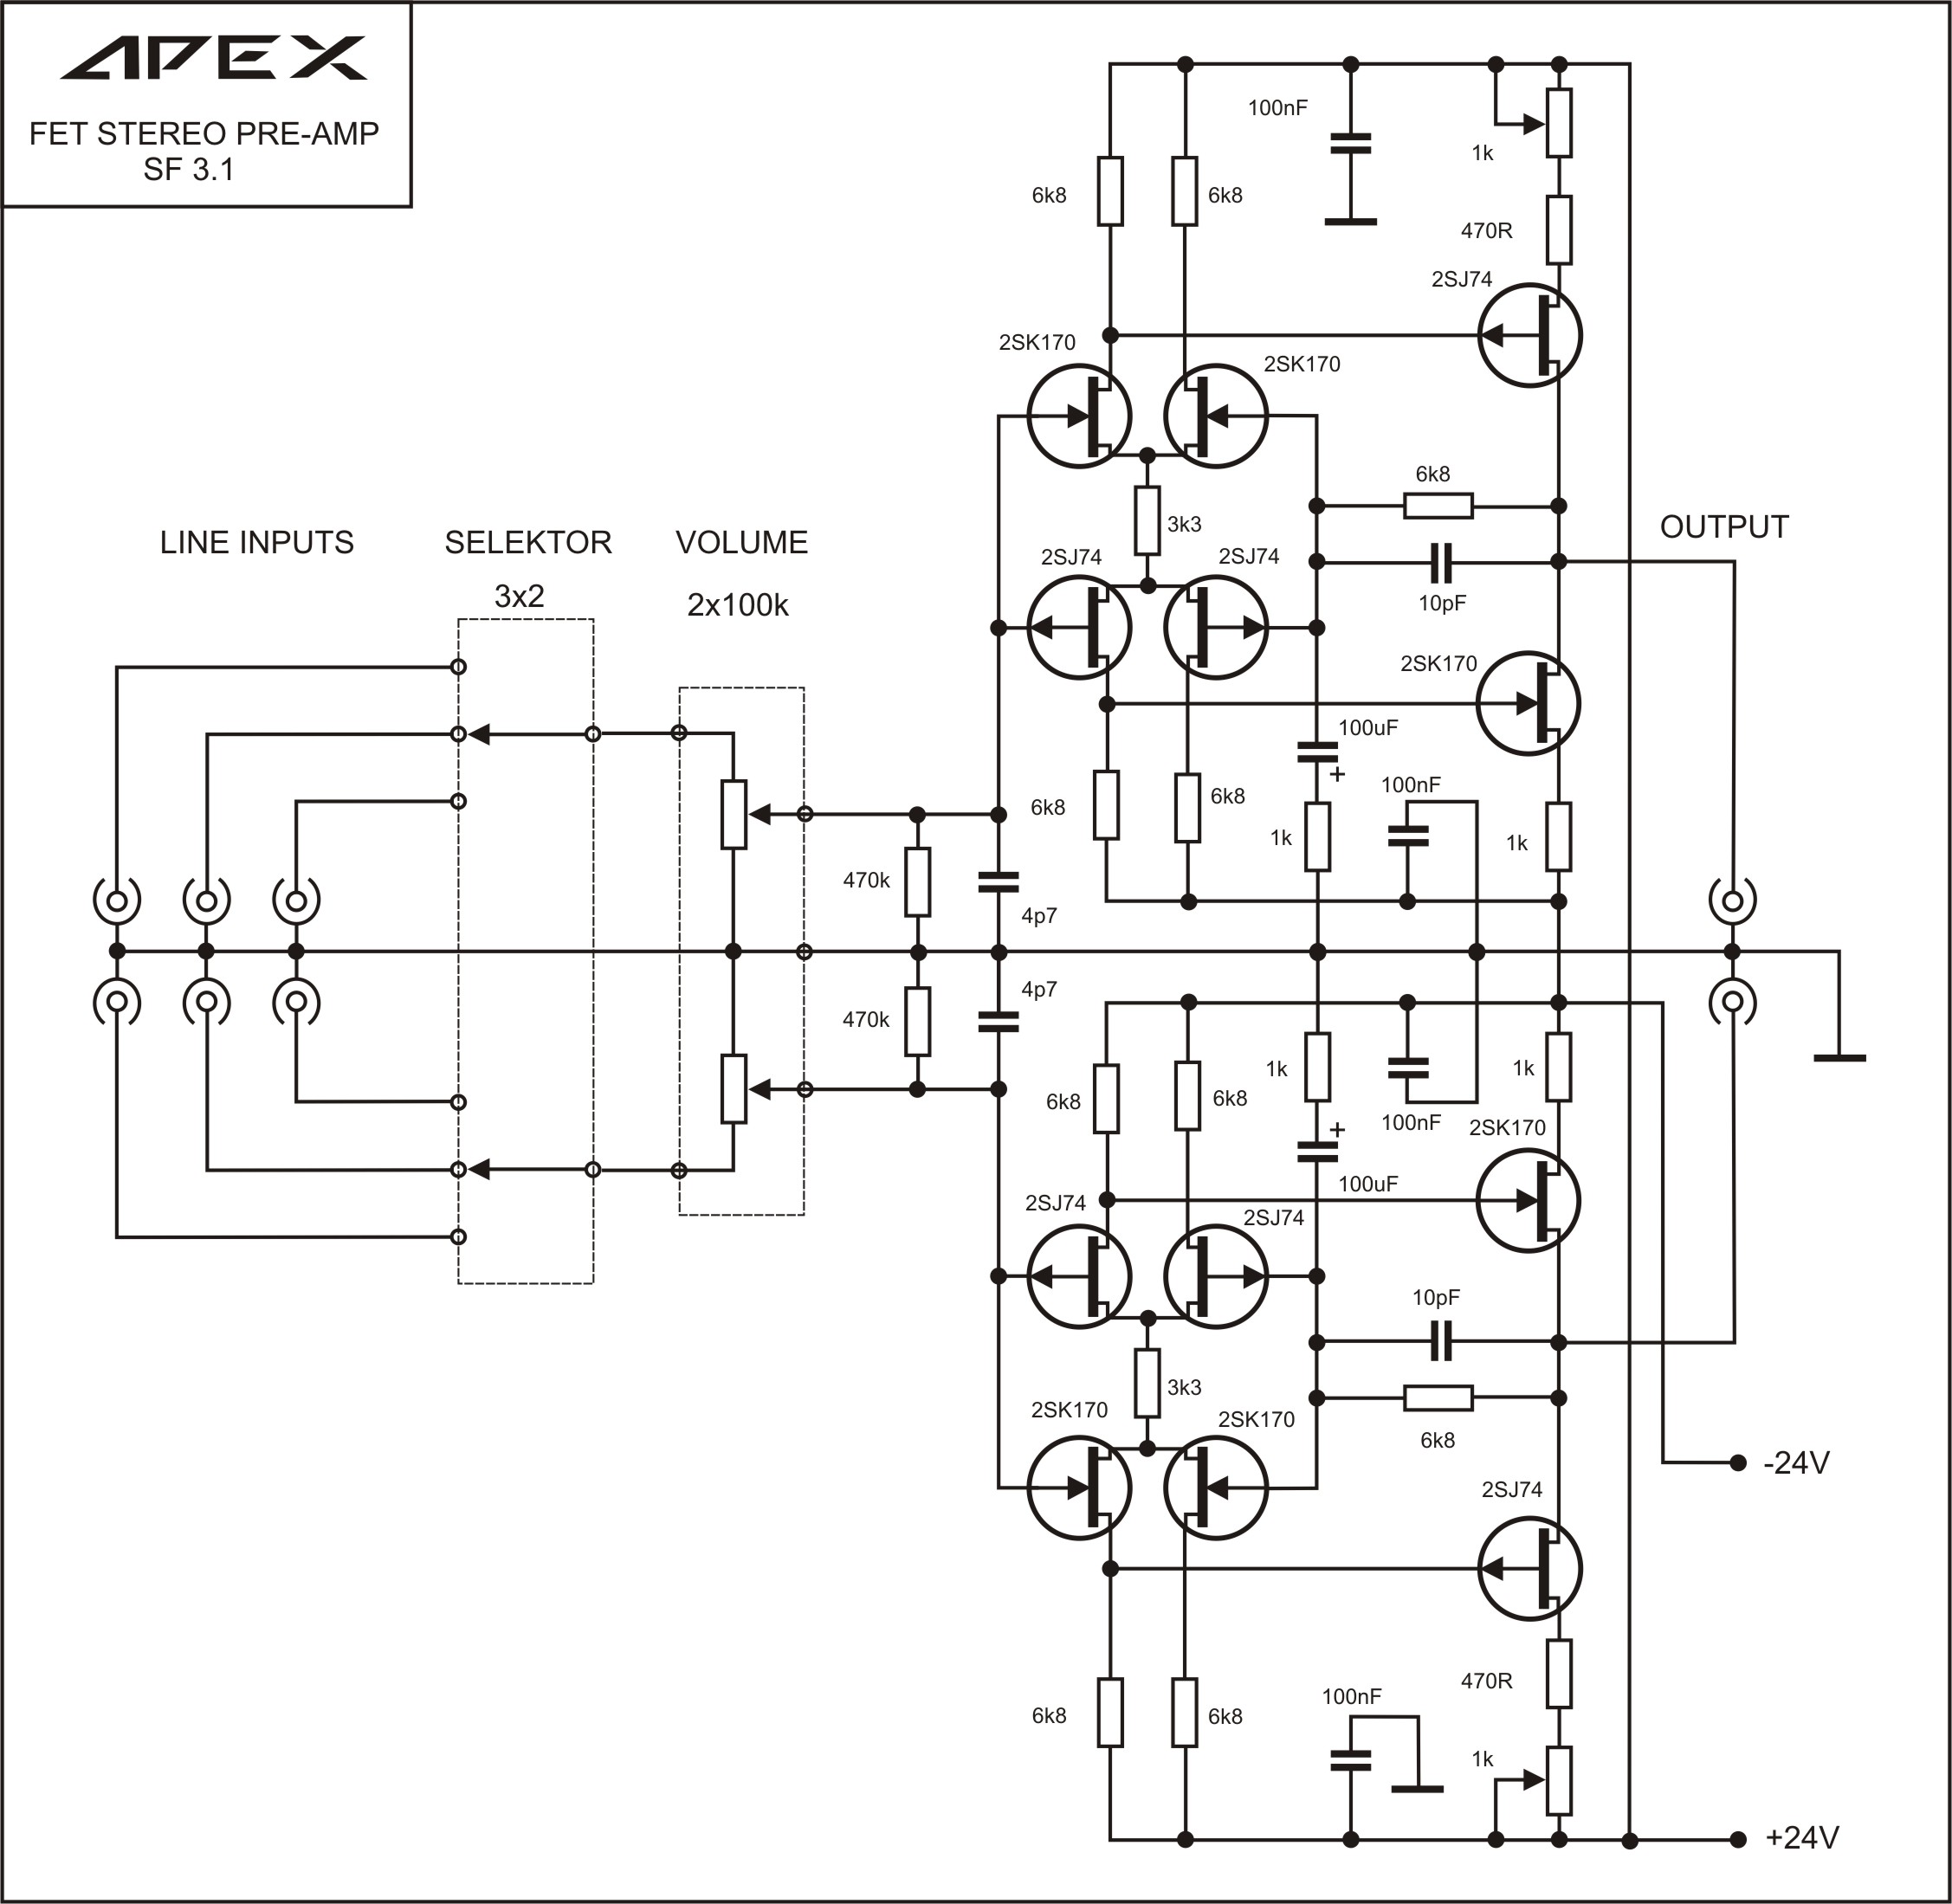 471851d1426443105-100w-ultimate-fidelity-amplifier-apex-fet-preamp.jpg